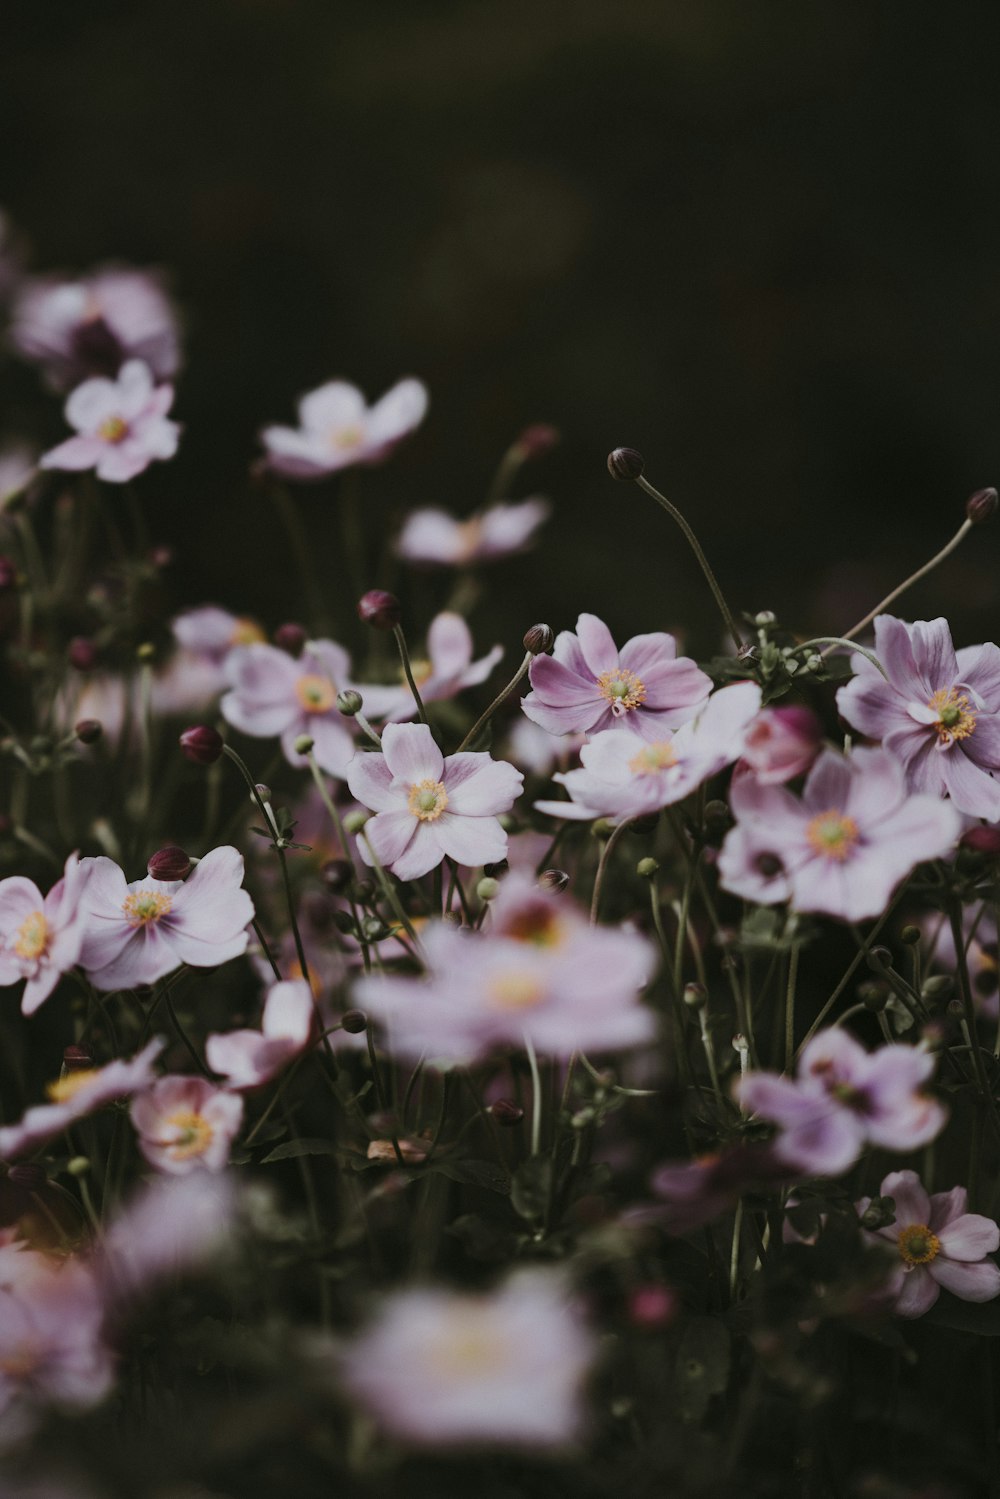 fleurs à pétales blancs et violets